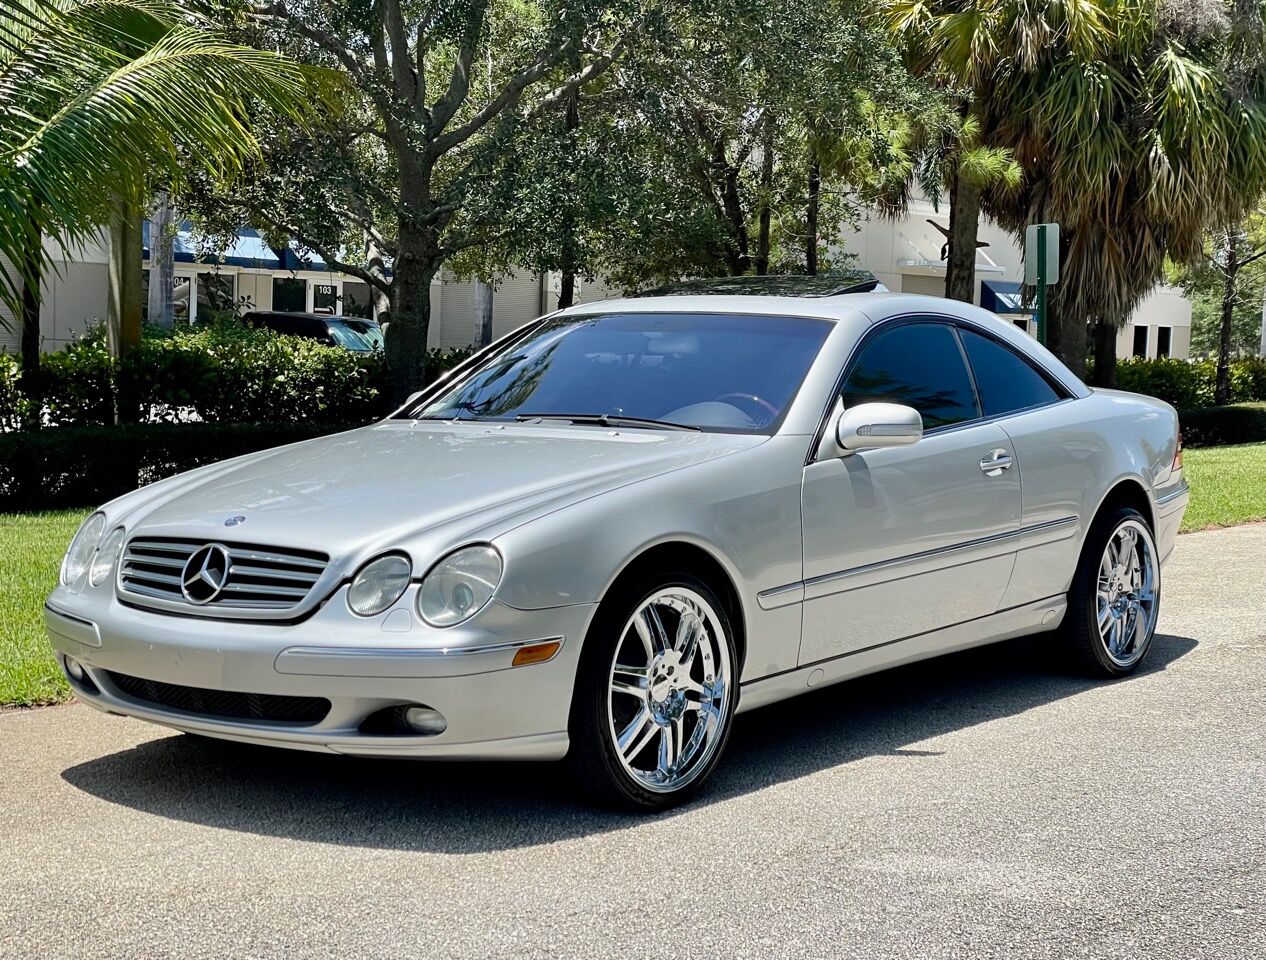 2000 Mercedes-Benz CL-Class For Sale - Carsforsale.com®